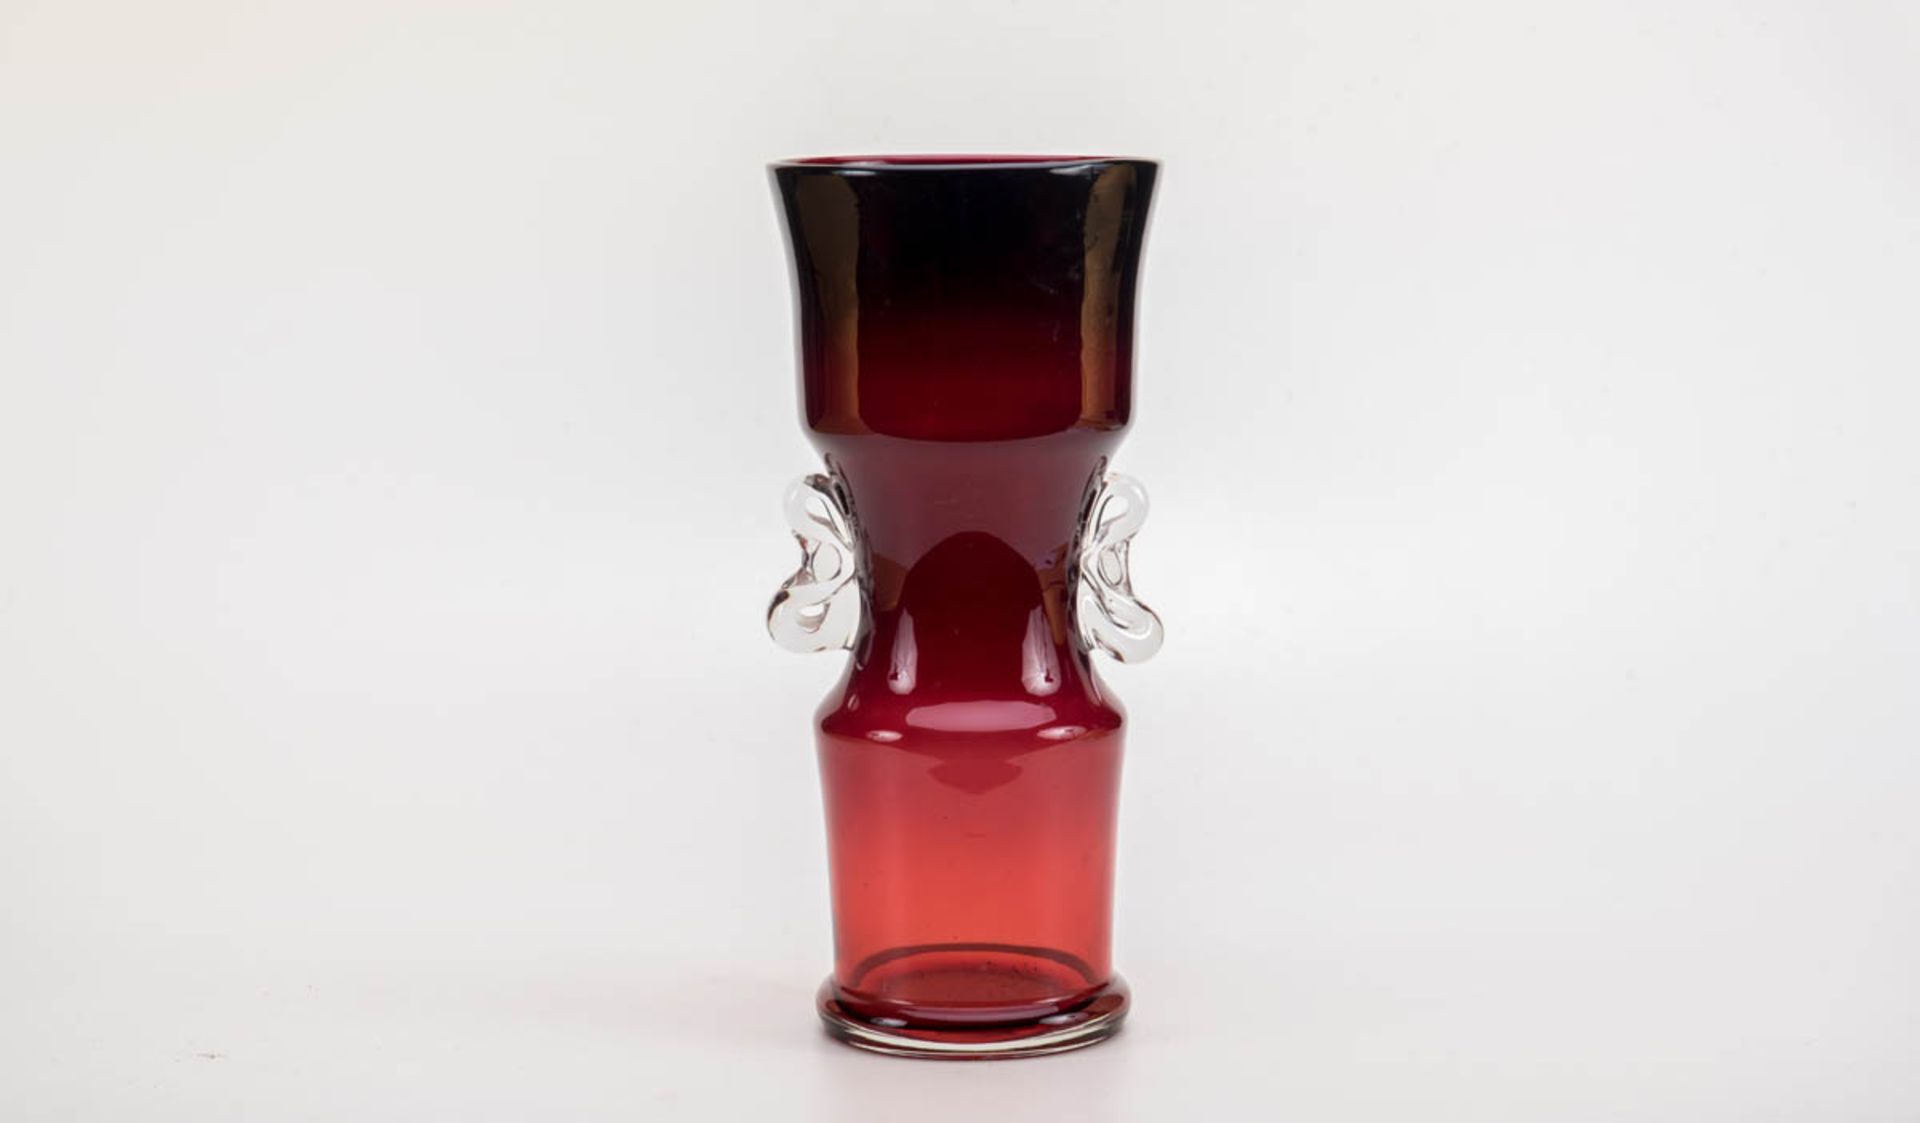 Ziervase, SchwedenFarbloses Glas mit Rosalinglas Verlauf überfangen. Runder Fuß, zylindrischer